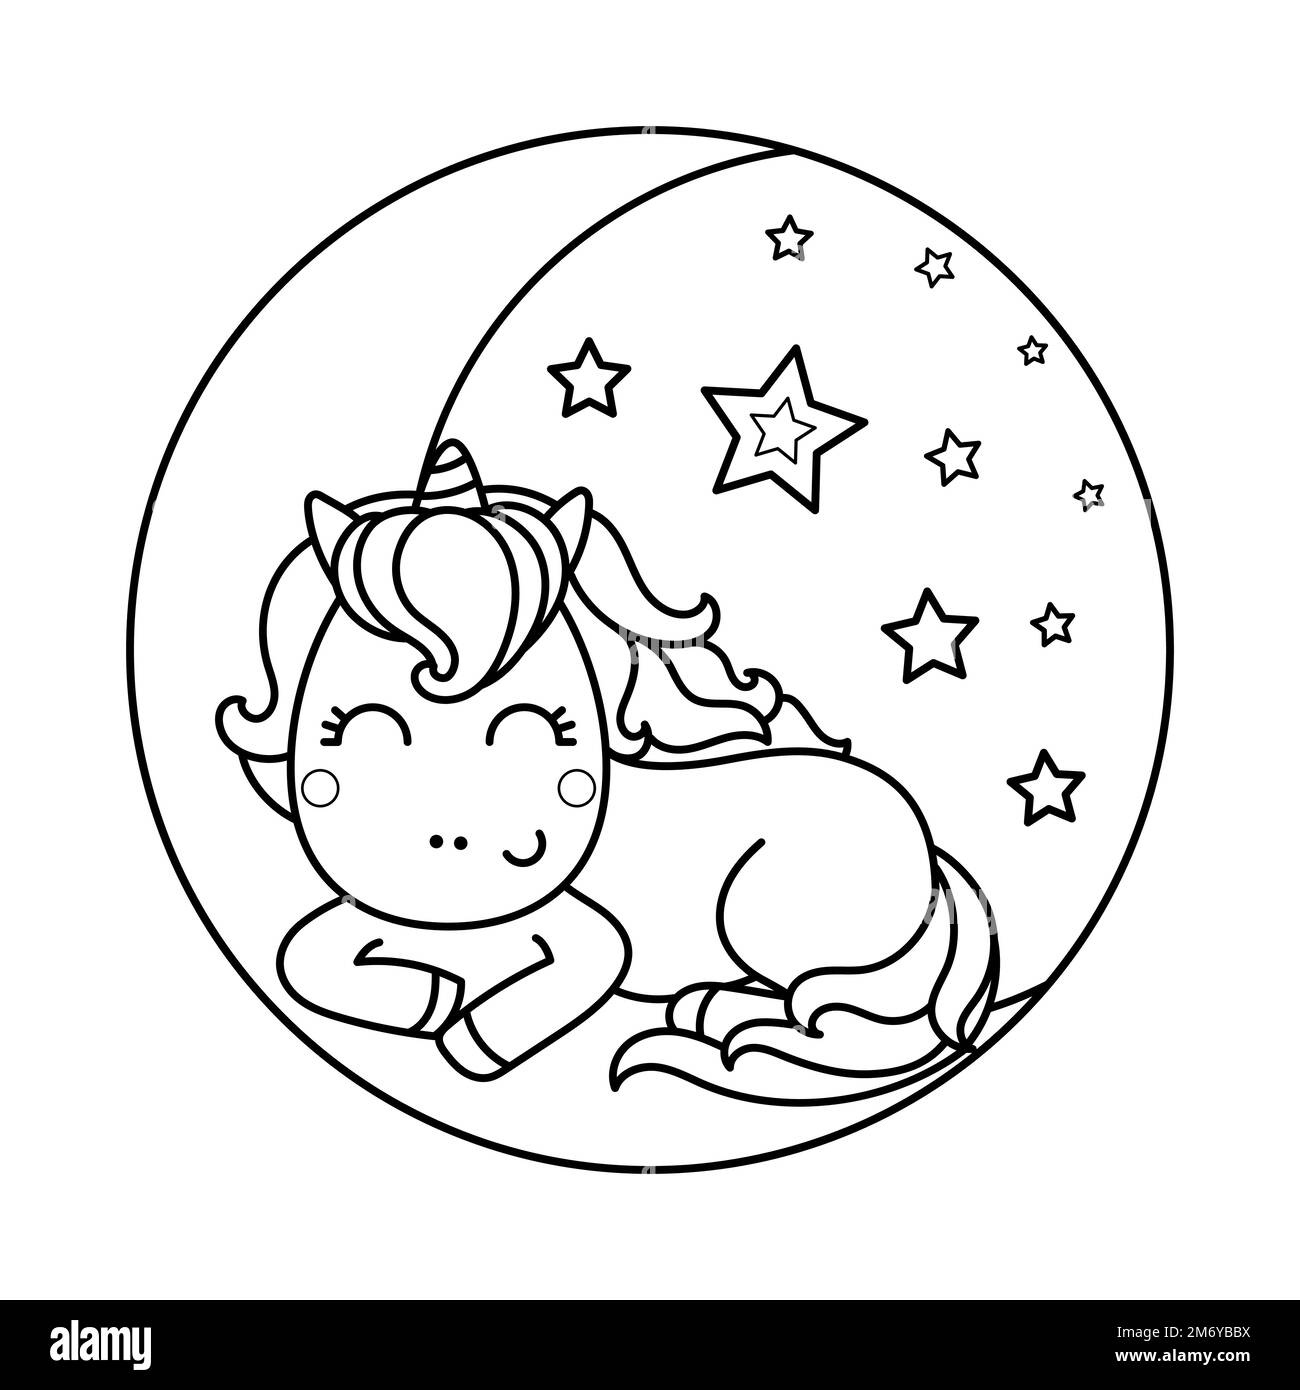 Le joli kawaii unicorn dort sur la lune. Image linéaire noir et blanc. Vecteur Illustration de Vecteur